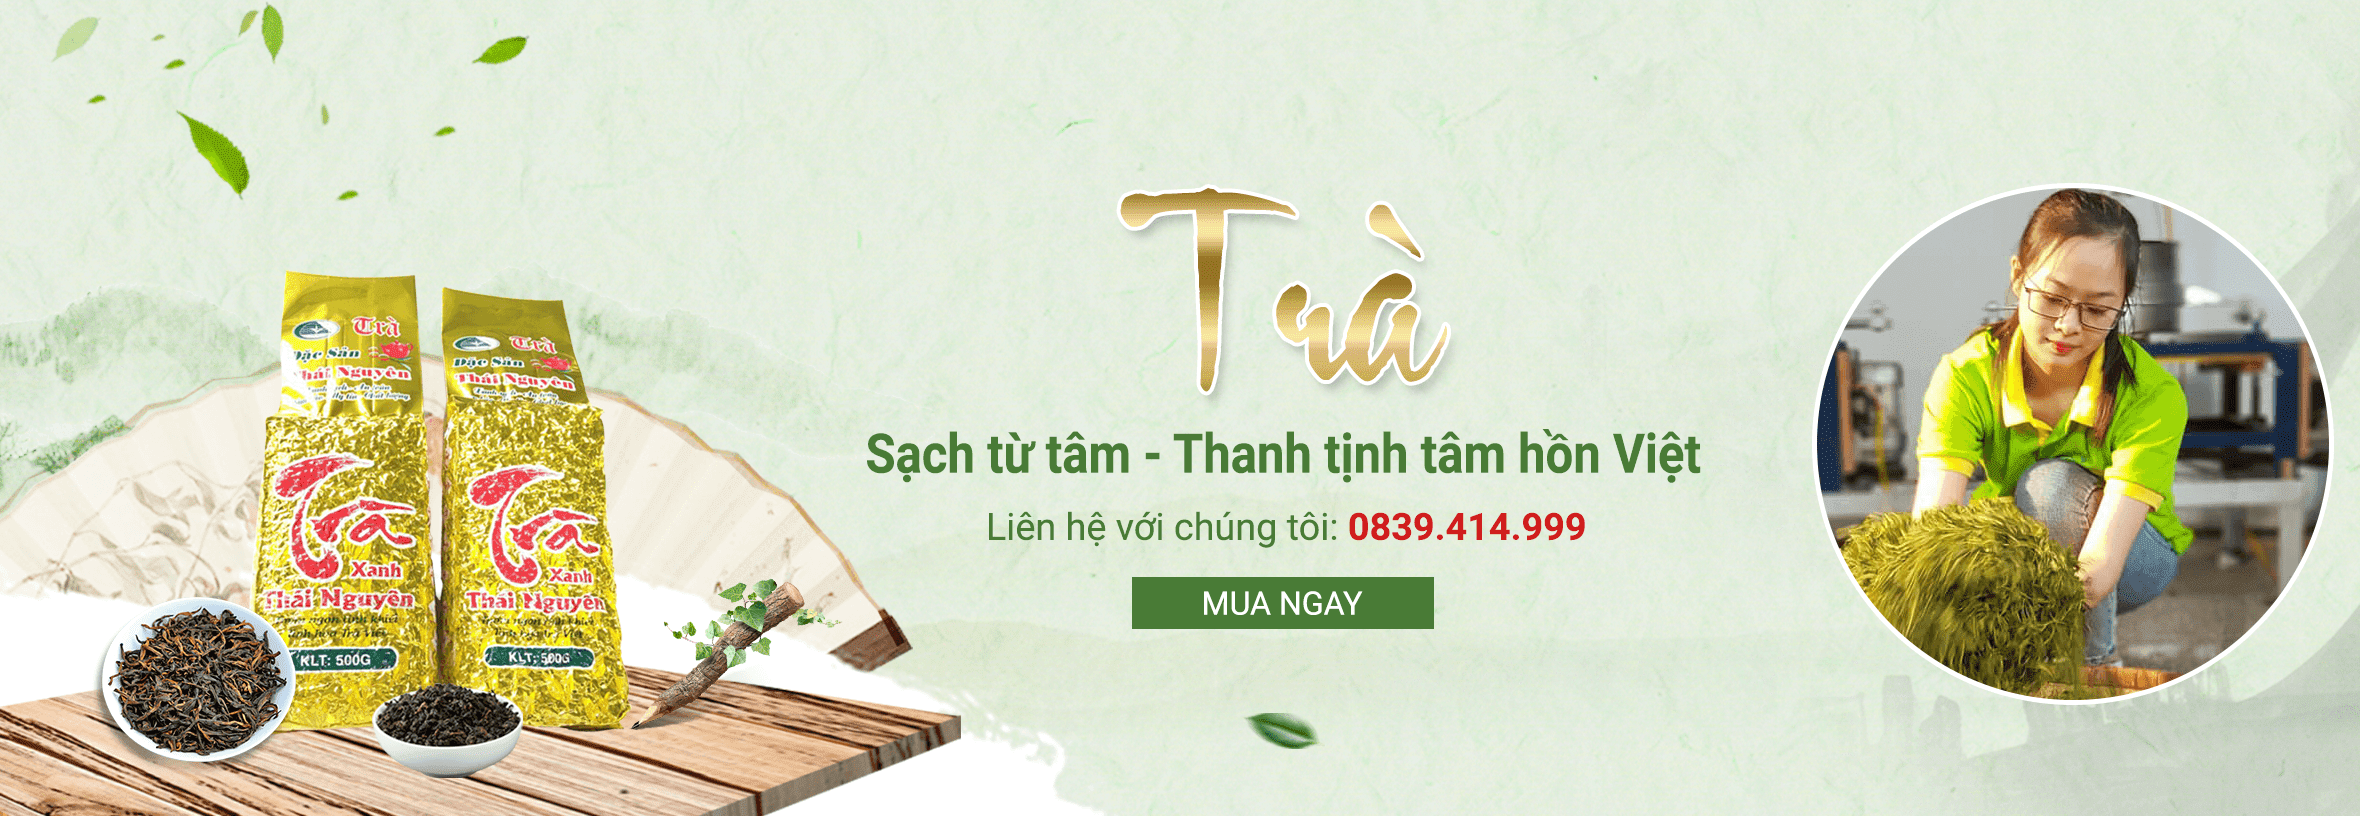 Đặng Trà - Trà truyền thống Thái Nguyên